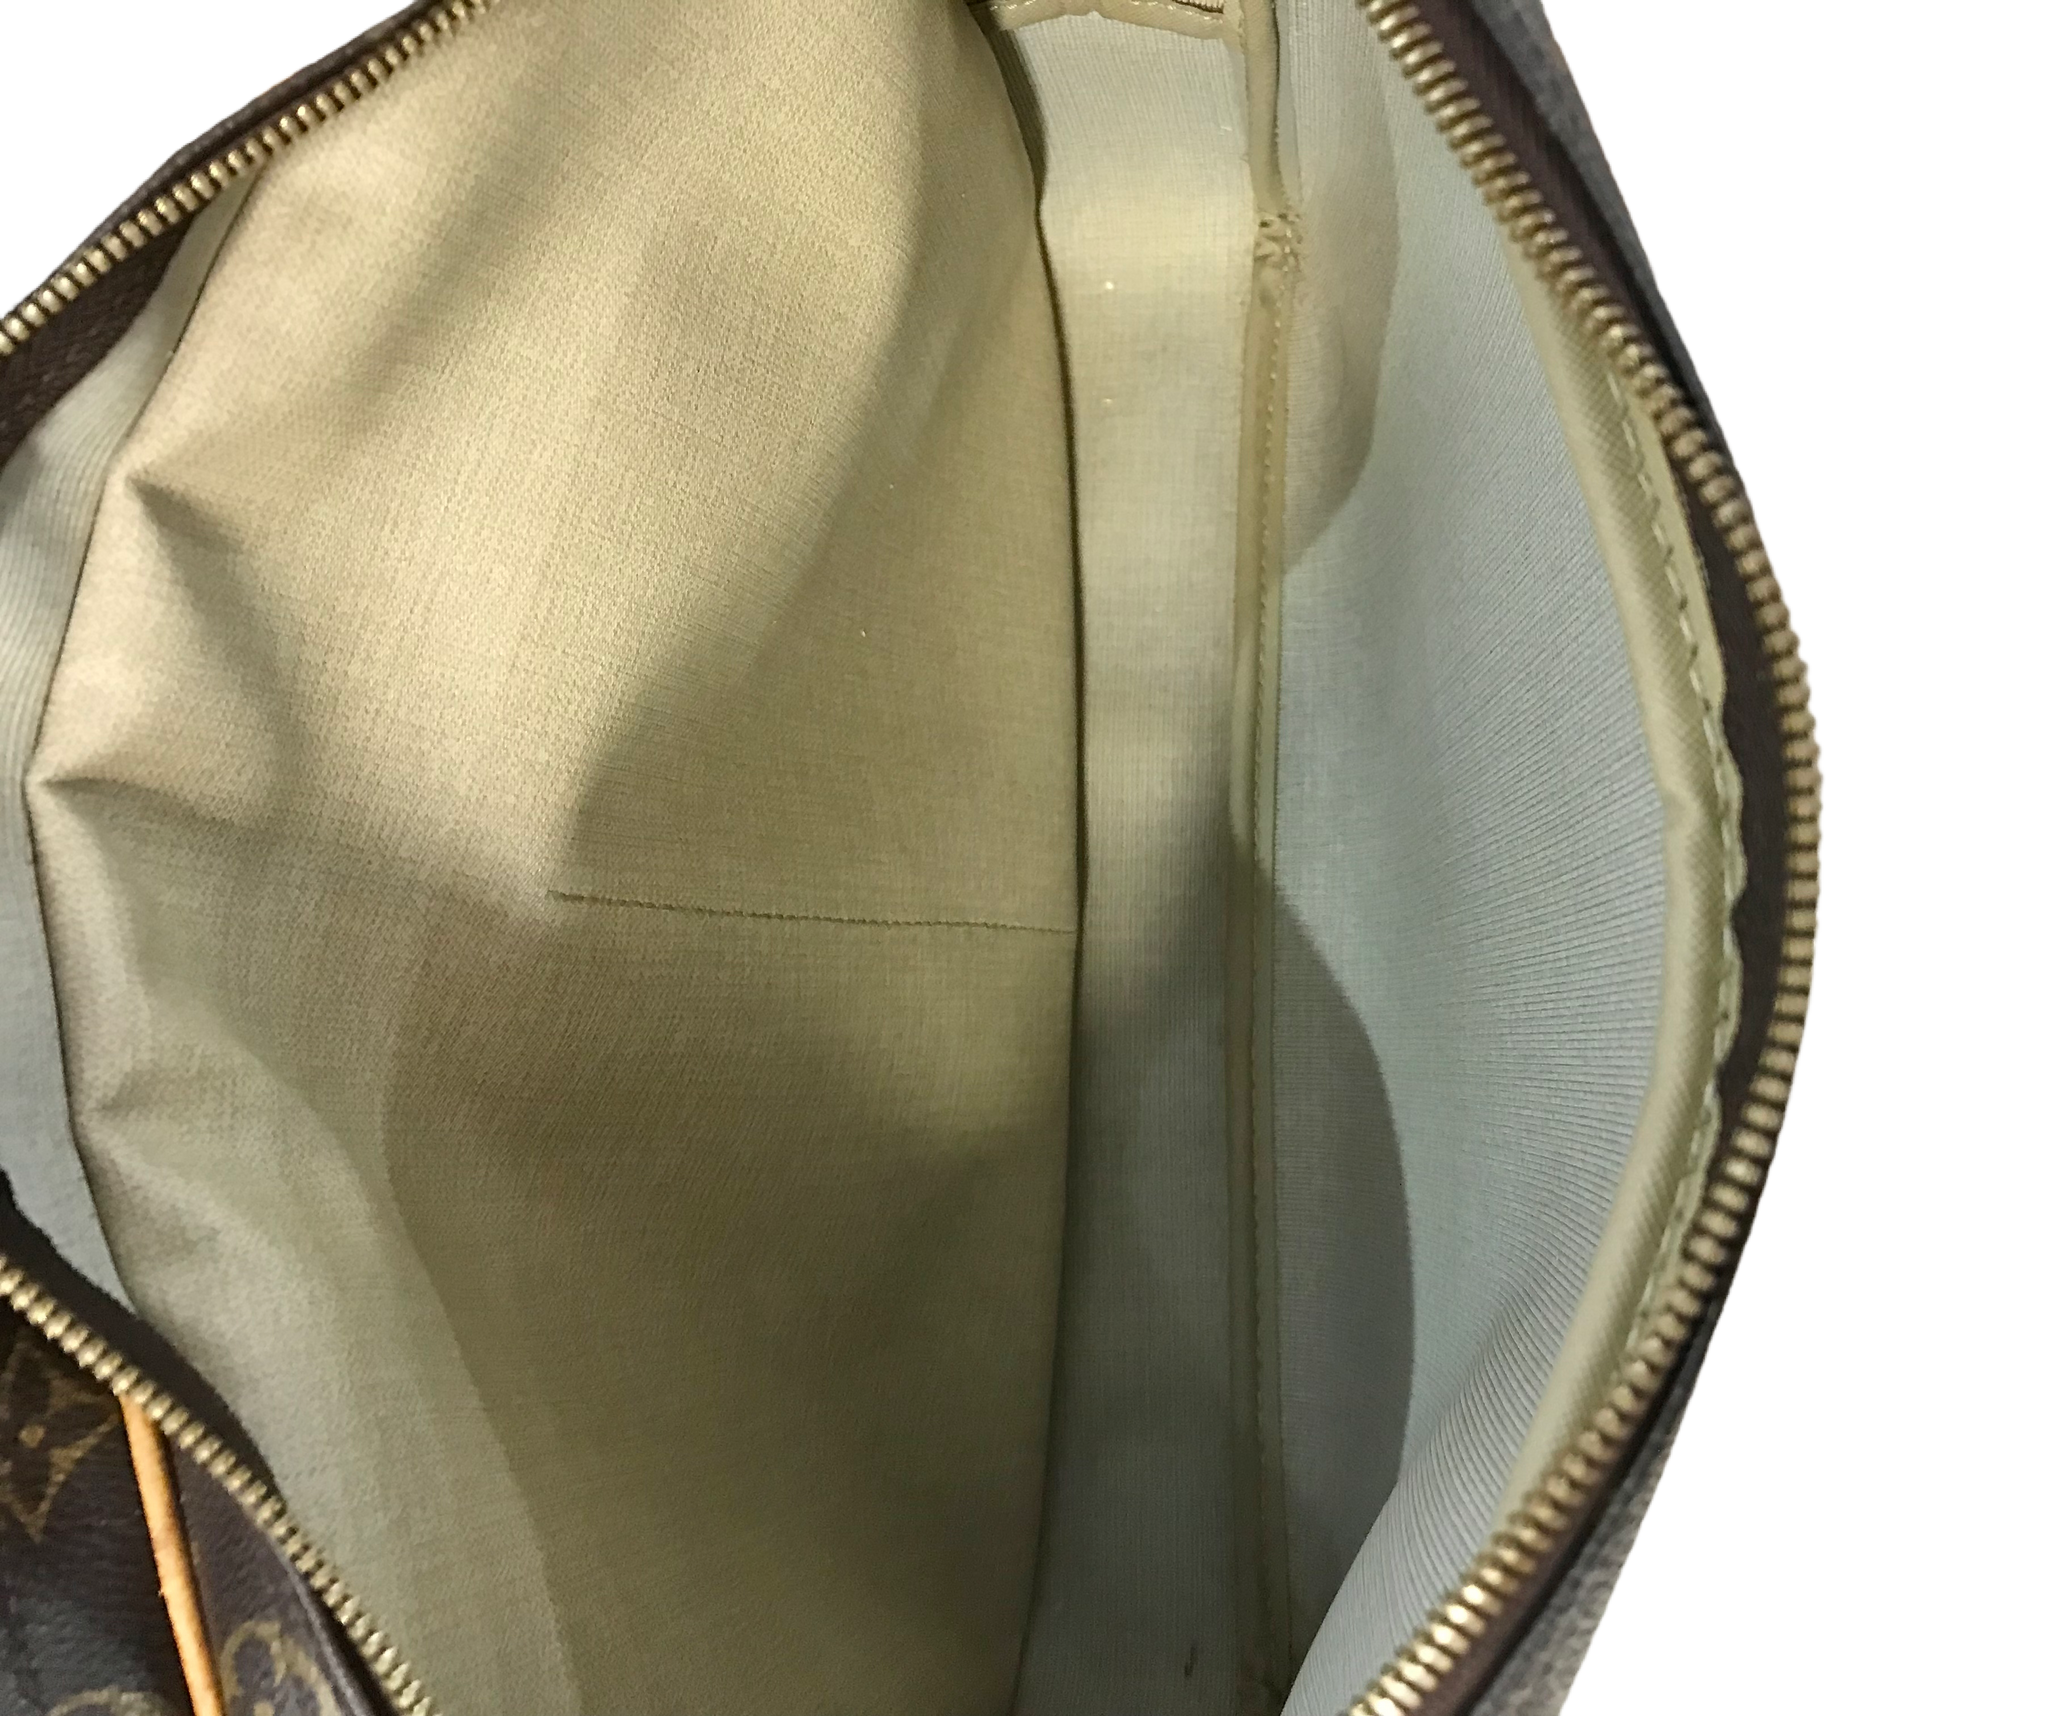 Louis Vuitton Reporter GM Monogram Canvas Shoulder Bag